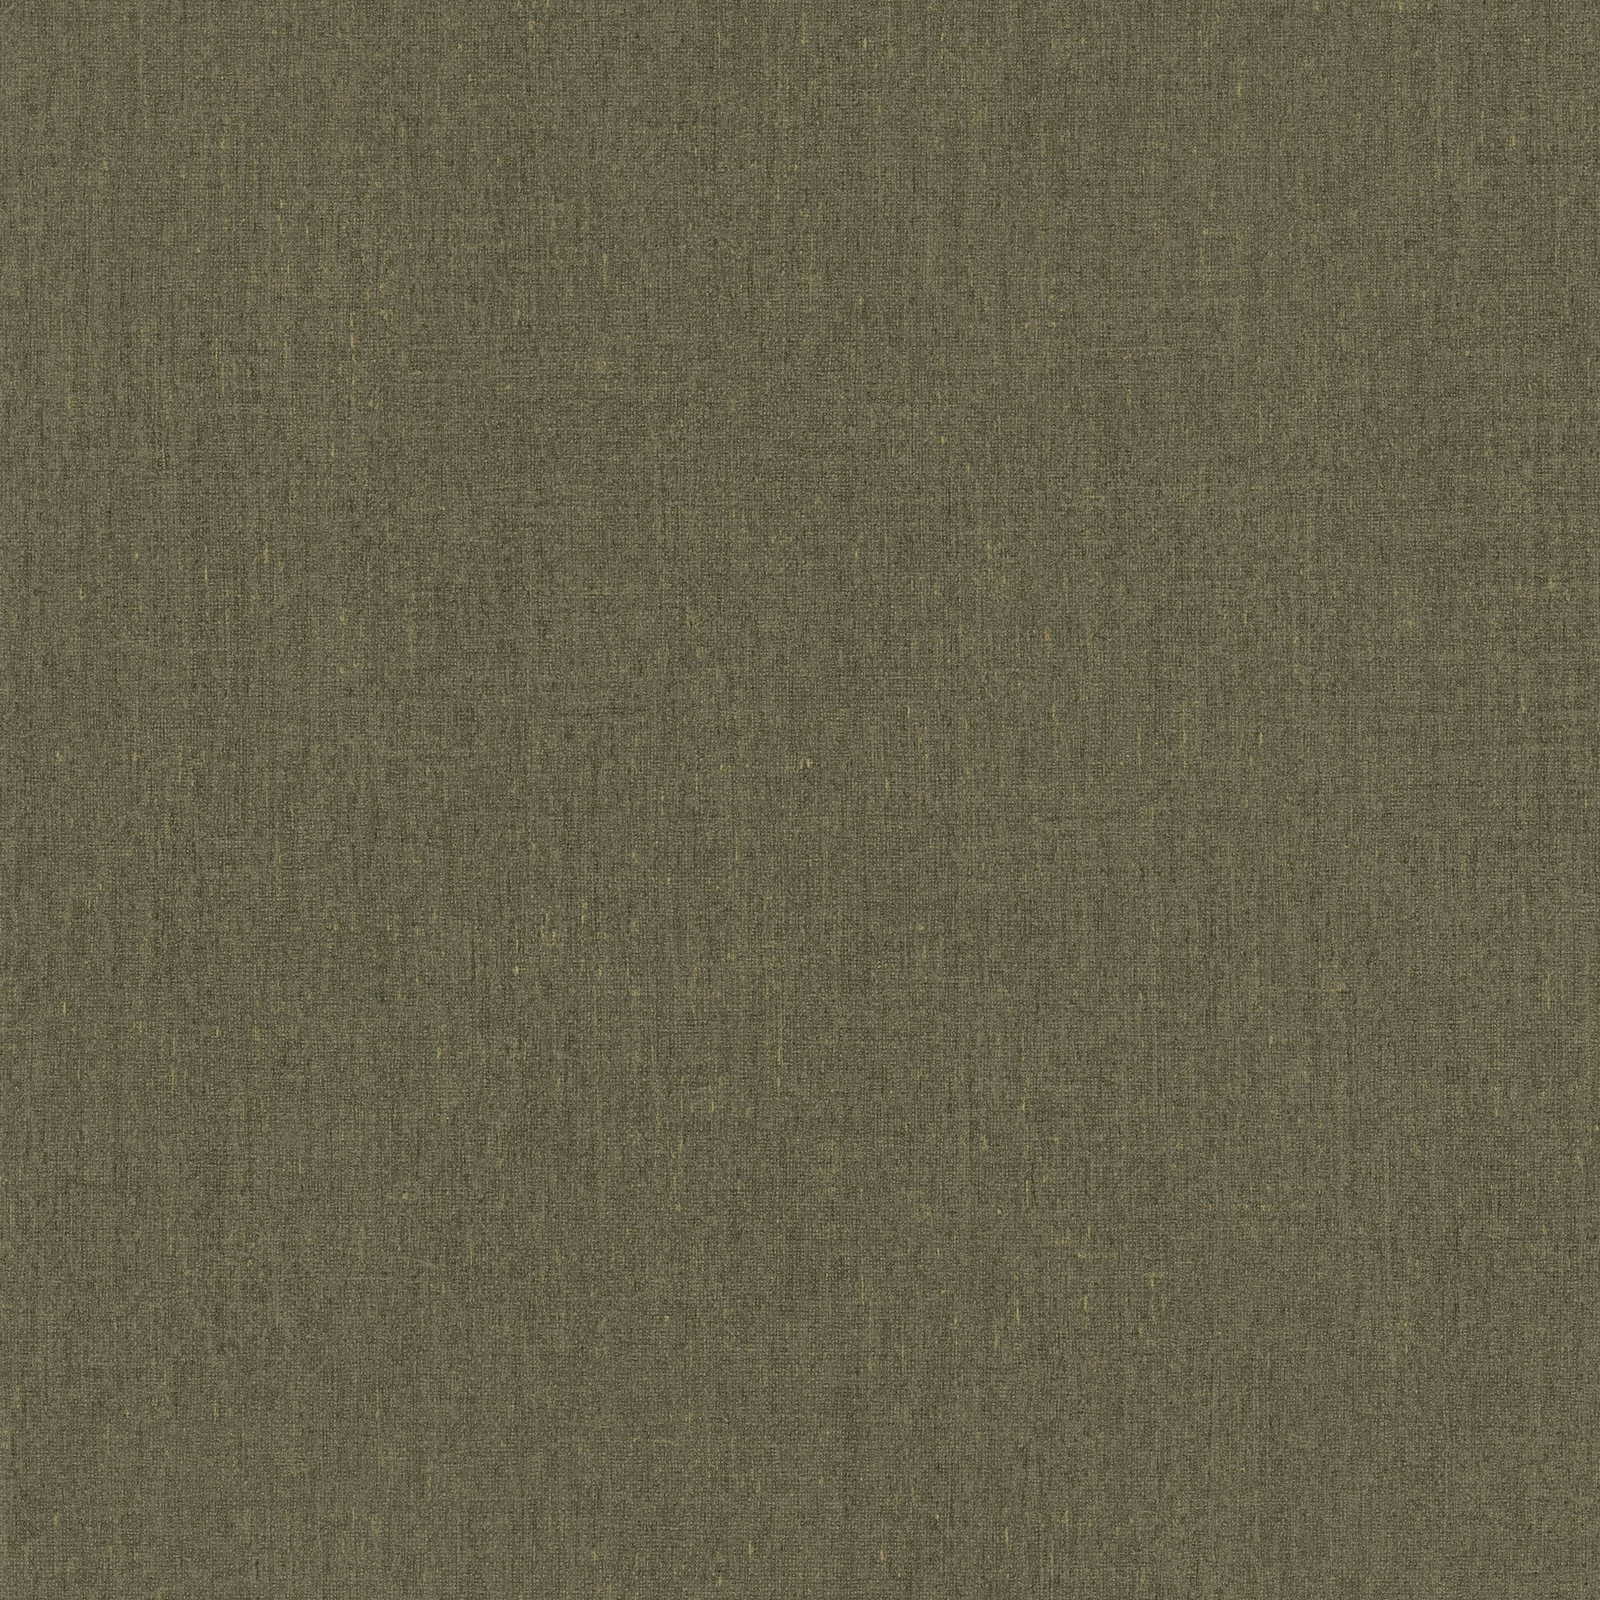 carta da parati marrone chiaro e oliva screziata, con dettaglio della struttura - marrone
